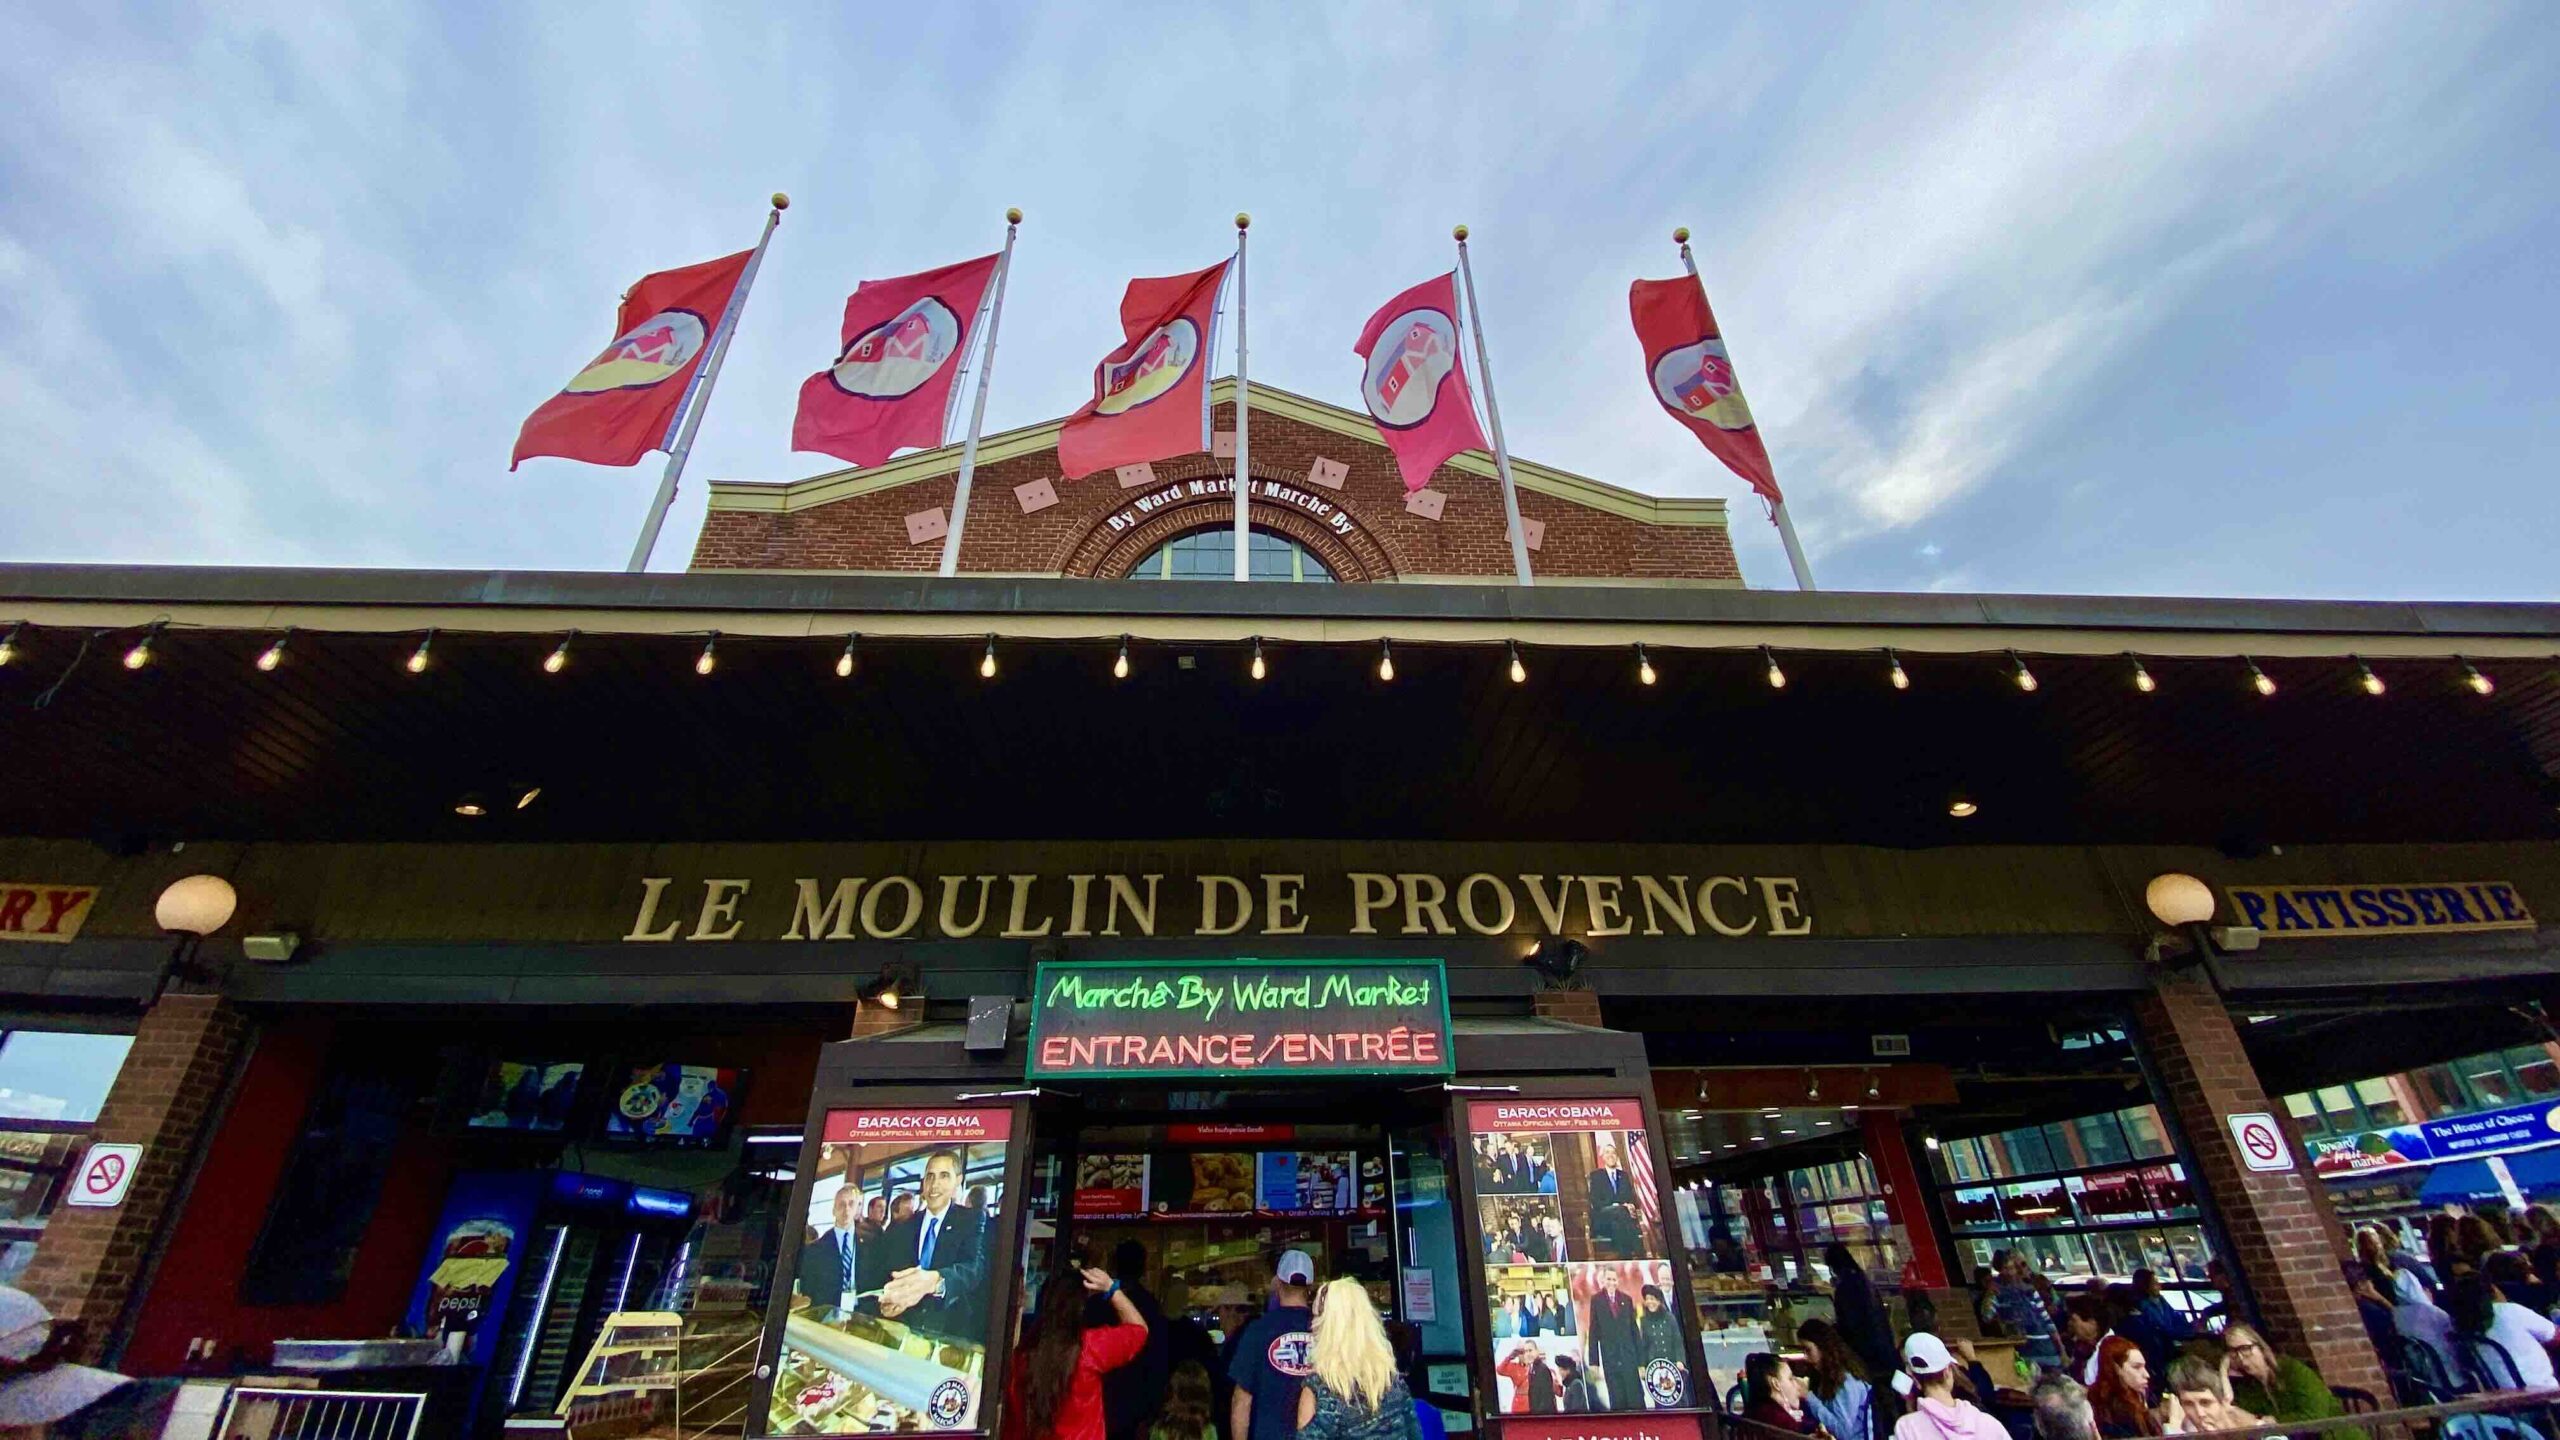 Le Moulin de Provence in ByWard Market photo by Bryan Dearsley